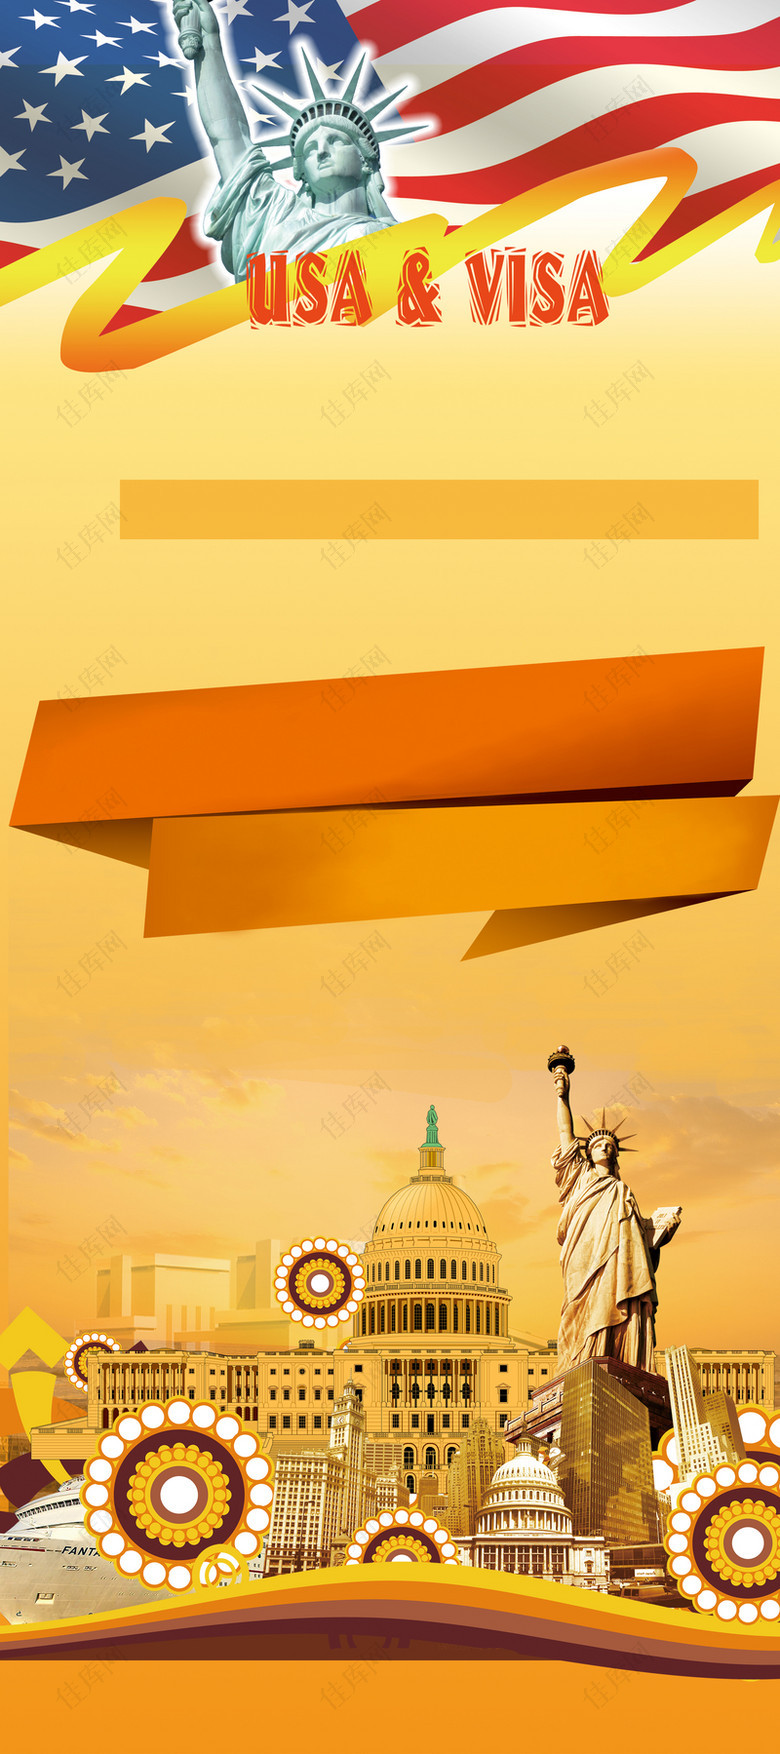 美国旅游签证海报